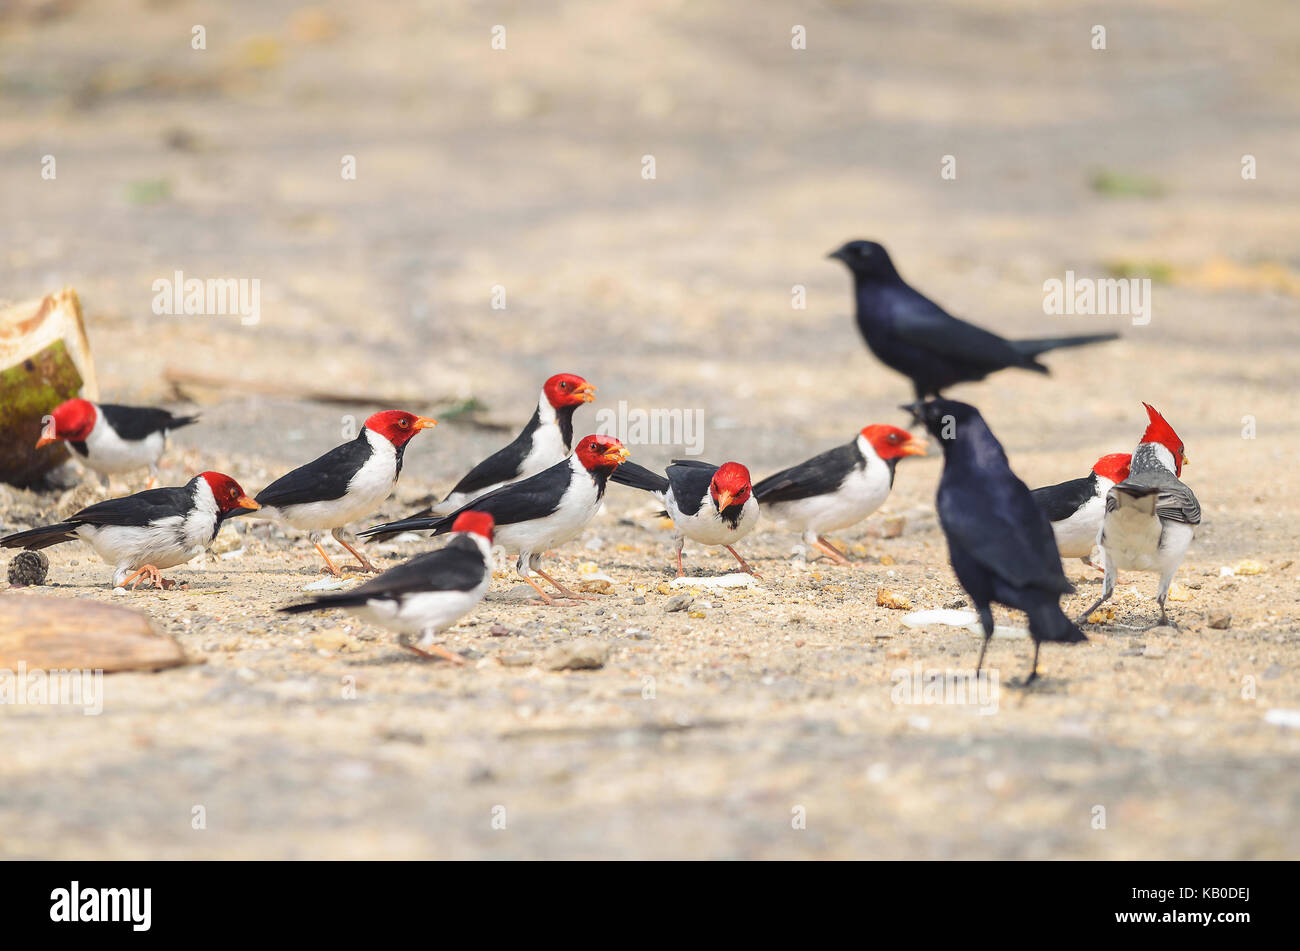 Gruppo di uccelli Cavalaria noto anche come Cardeal do Pantanal e alcuni uccelli neri intorno a. Uccello con testa di colore rosso, nero ali e ventre bianco. Foto scattata o Foto Stock